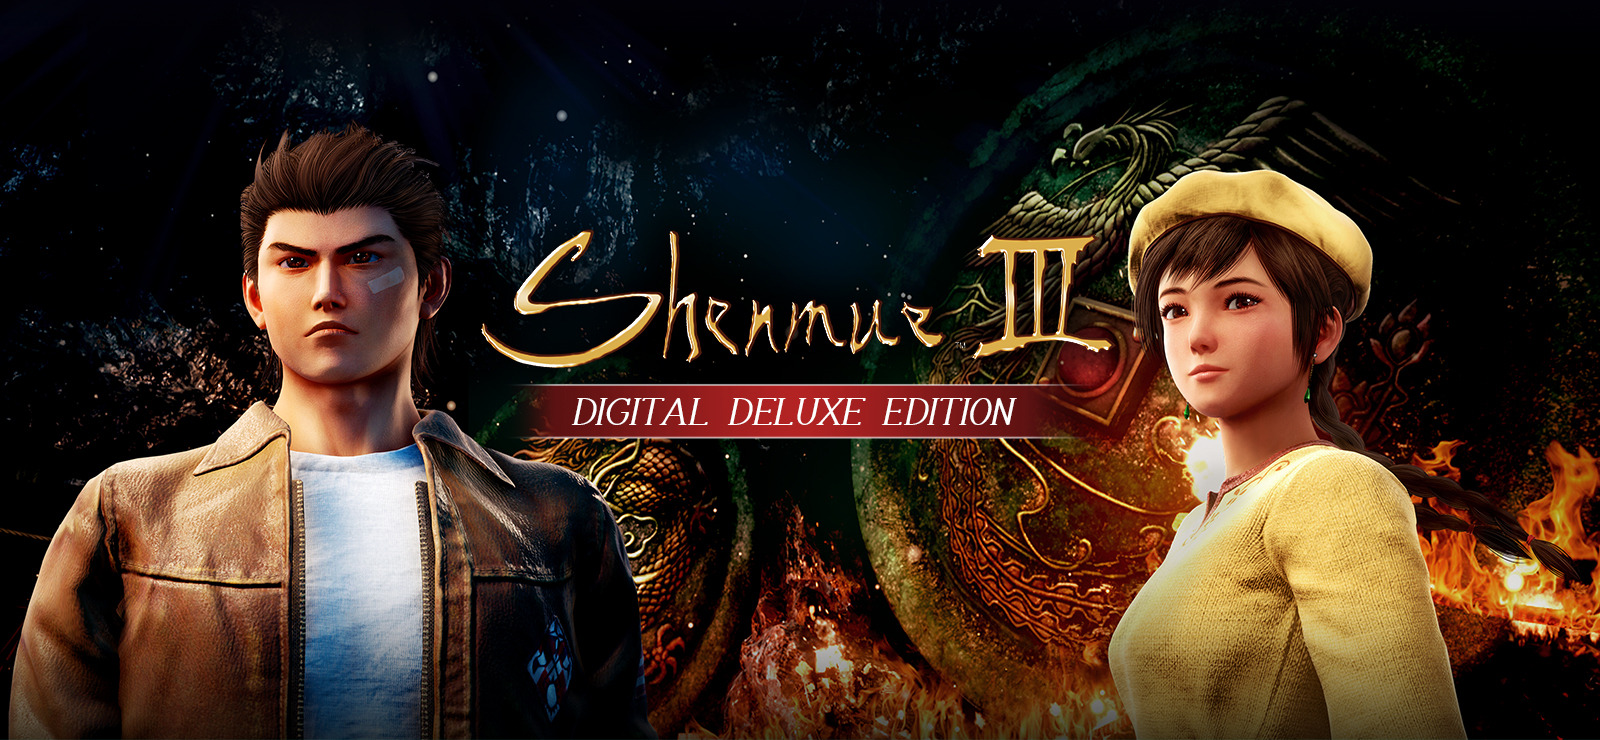 80% Shenmue III Deluxe Edition sur GOG.com